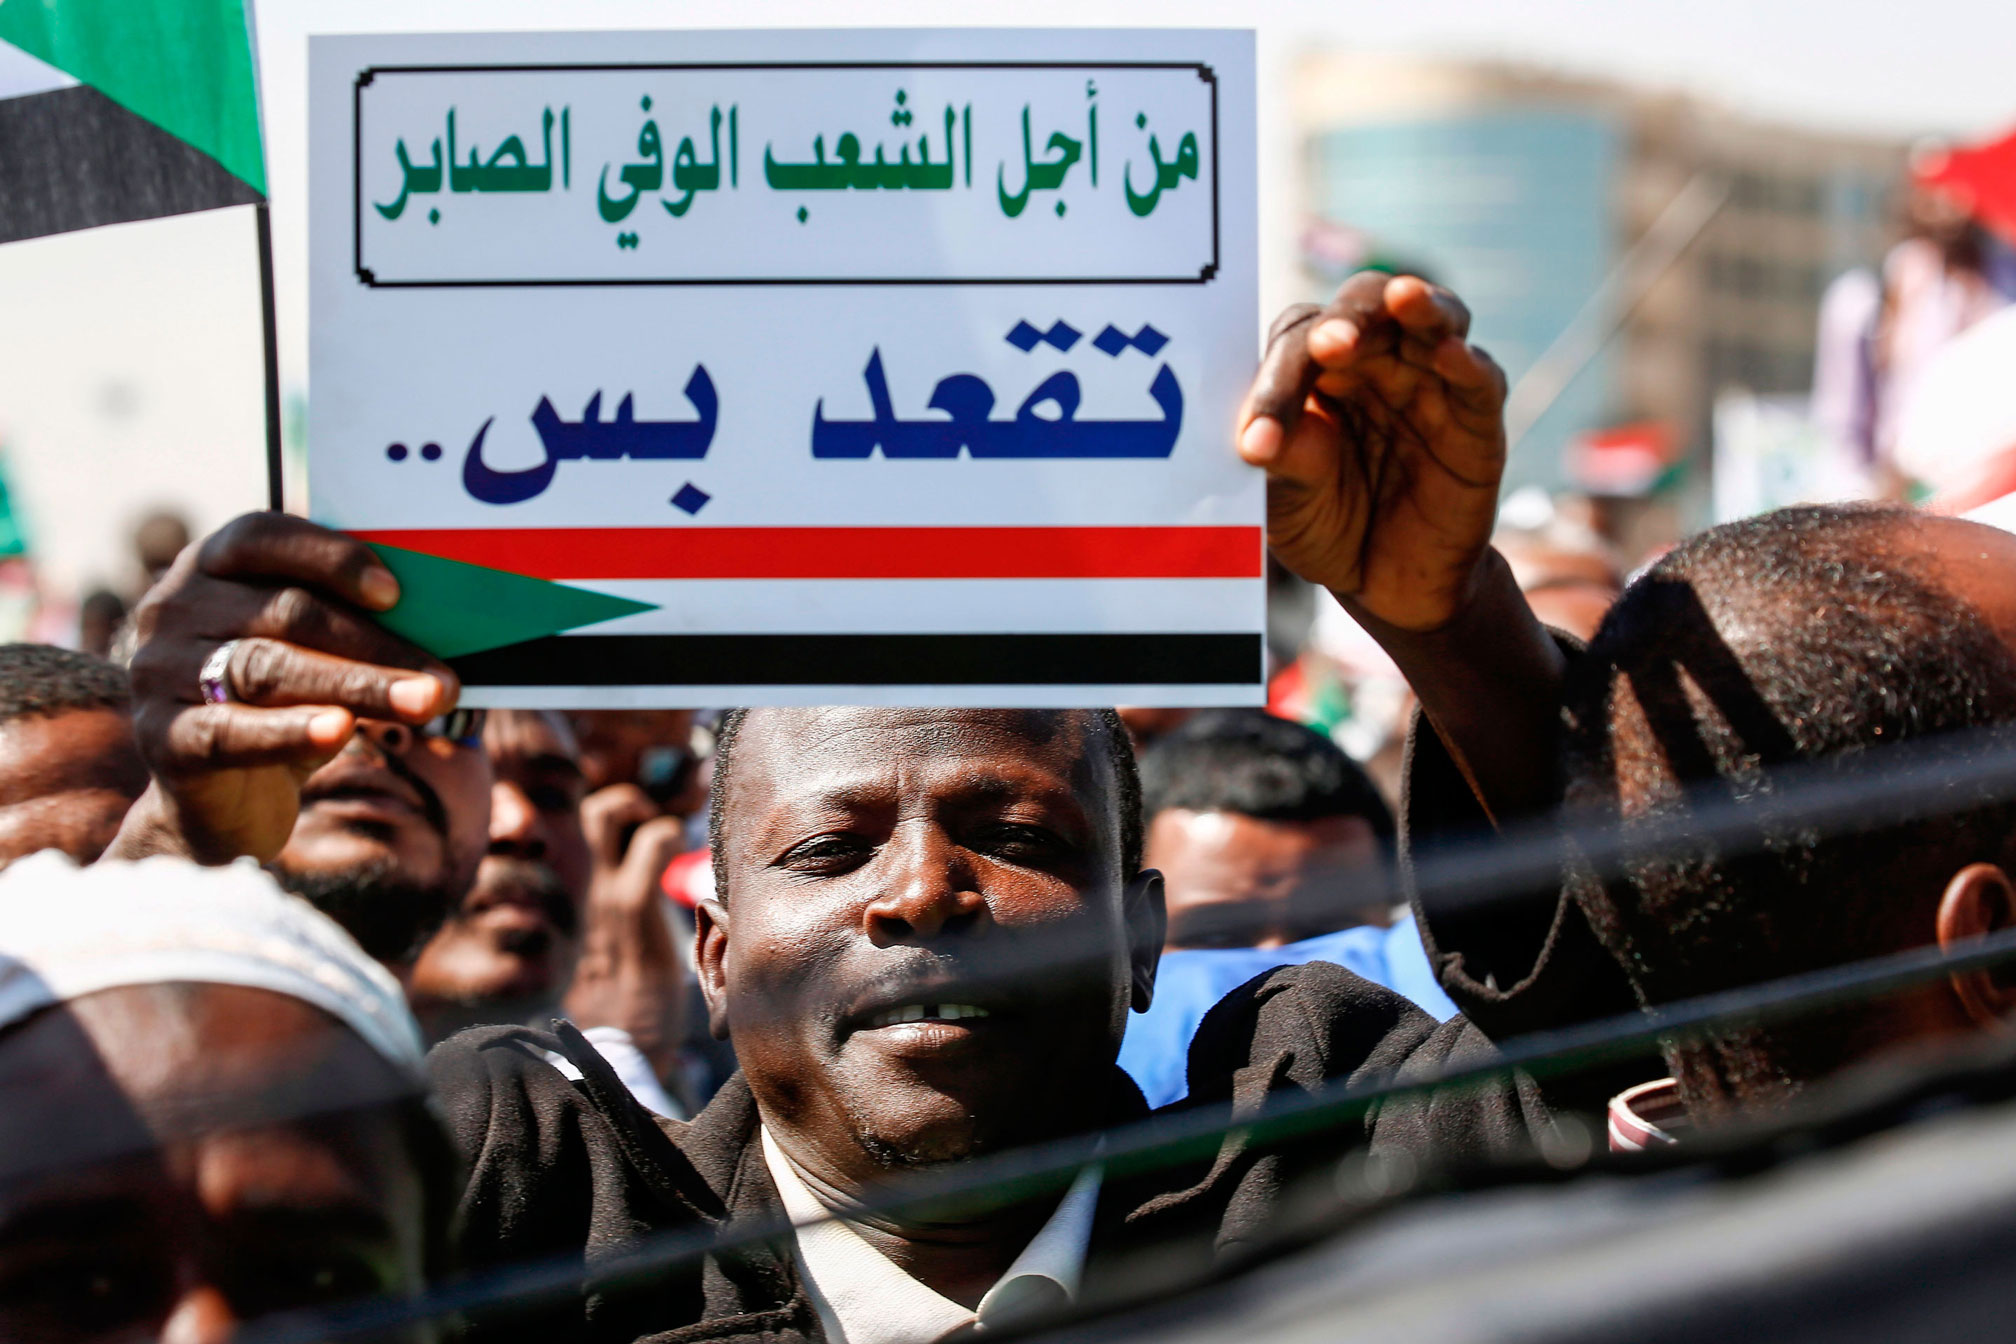 مظاهرات مؤيدة للرئيس السوداني: سيناريو تكرر في كل الدول التي شهدت انتفاضات شعبية انتهت بسقوط أنظمتها